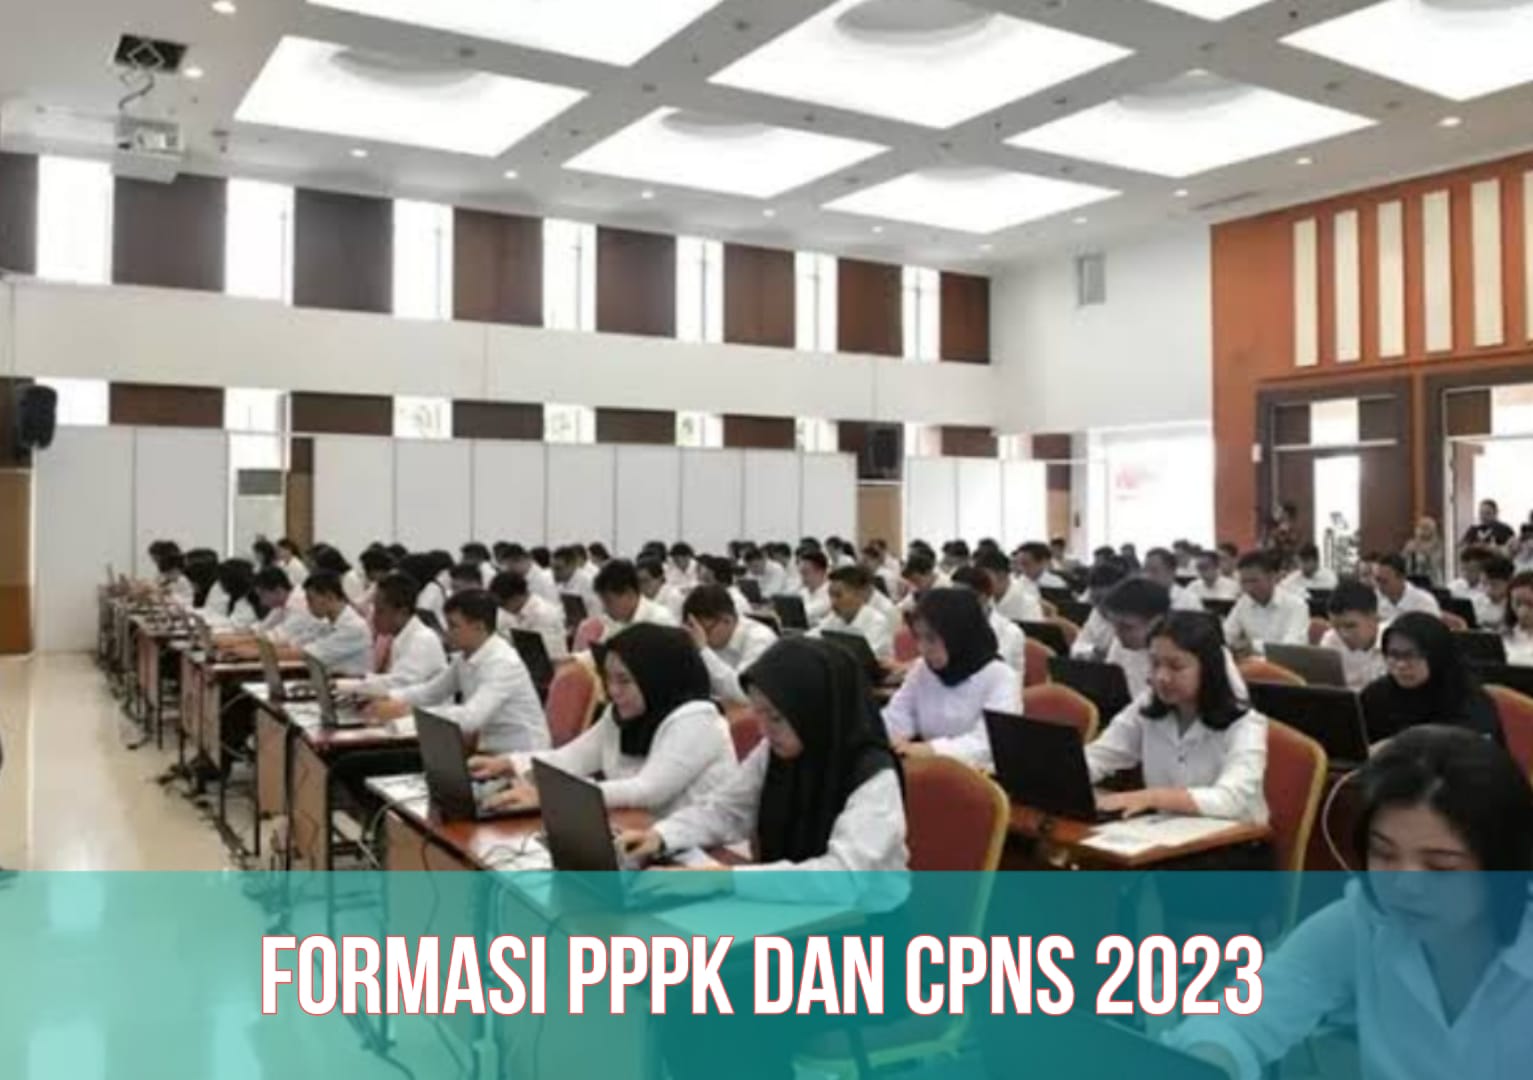 CPNS 2023 Dibuka September, 1 Juta Lebih Formasi, Berikut Info Lengkapnya